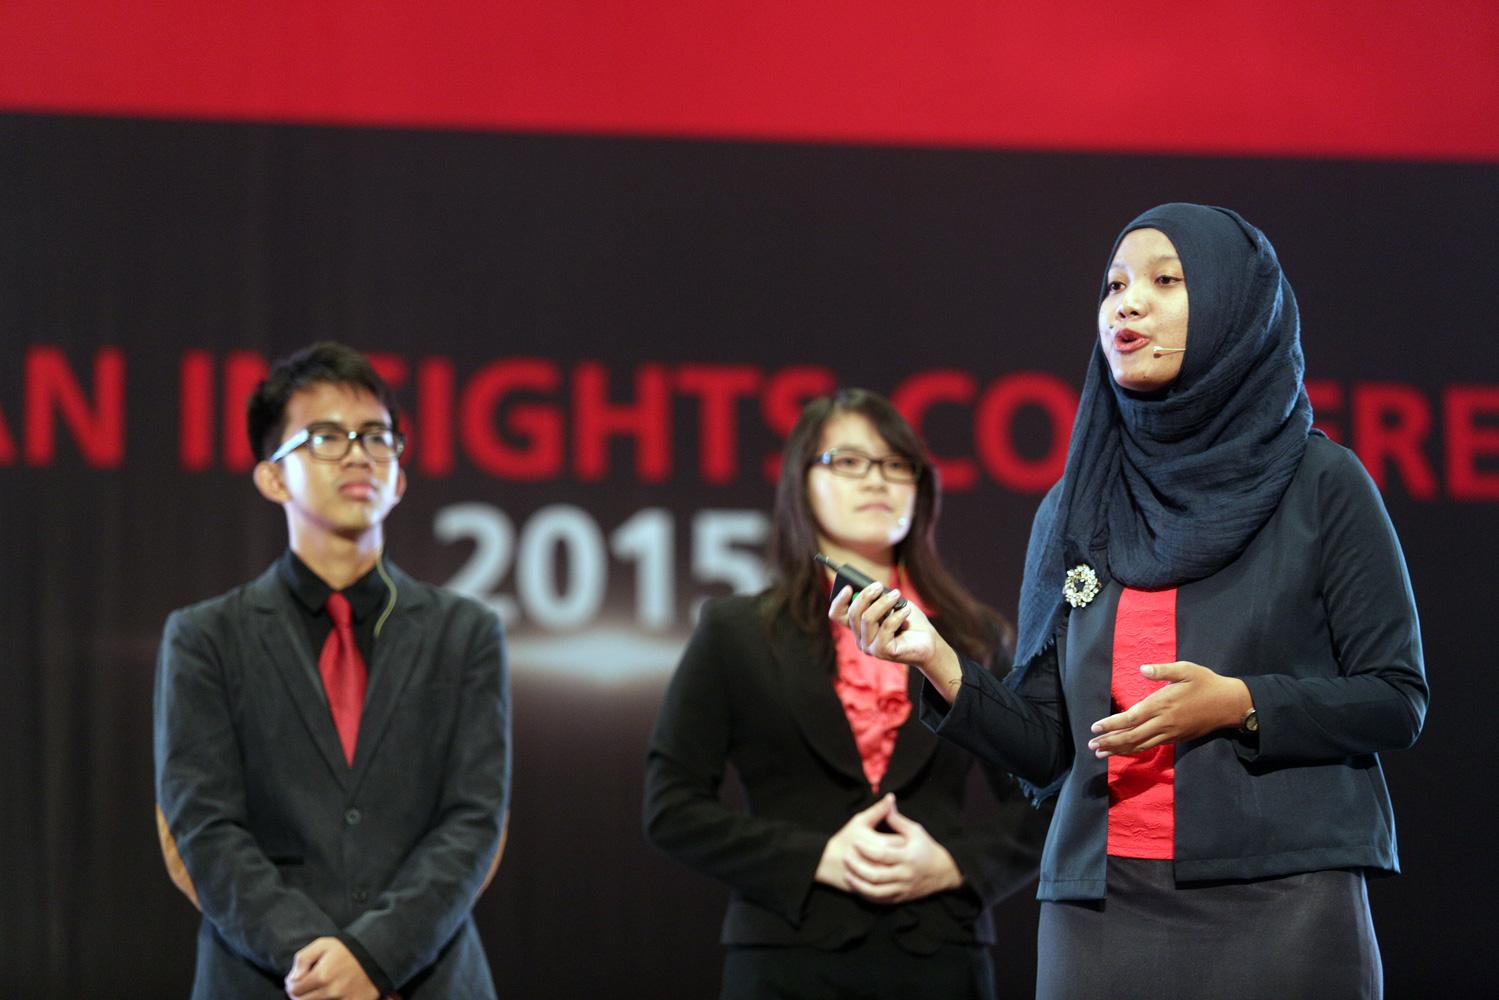 Dewanti Cahyaningsih dari Univ. Negeri Sebelas Maret, Solo, sebagai juara 1 DBS Young Economist Stand-Up beraksi di hadapan peserta DBS Asian Insight Conference 2015 di Jakarta.